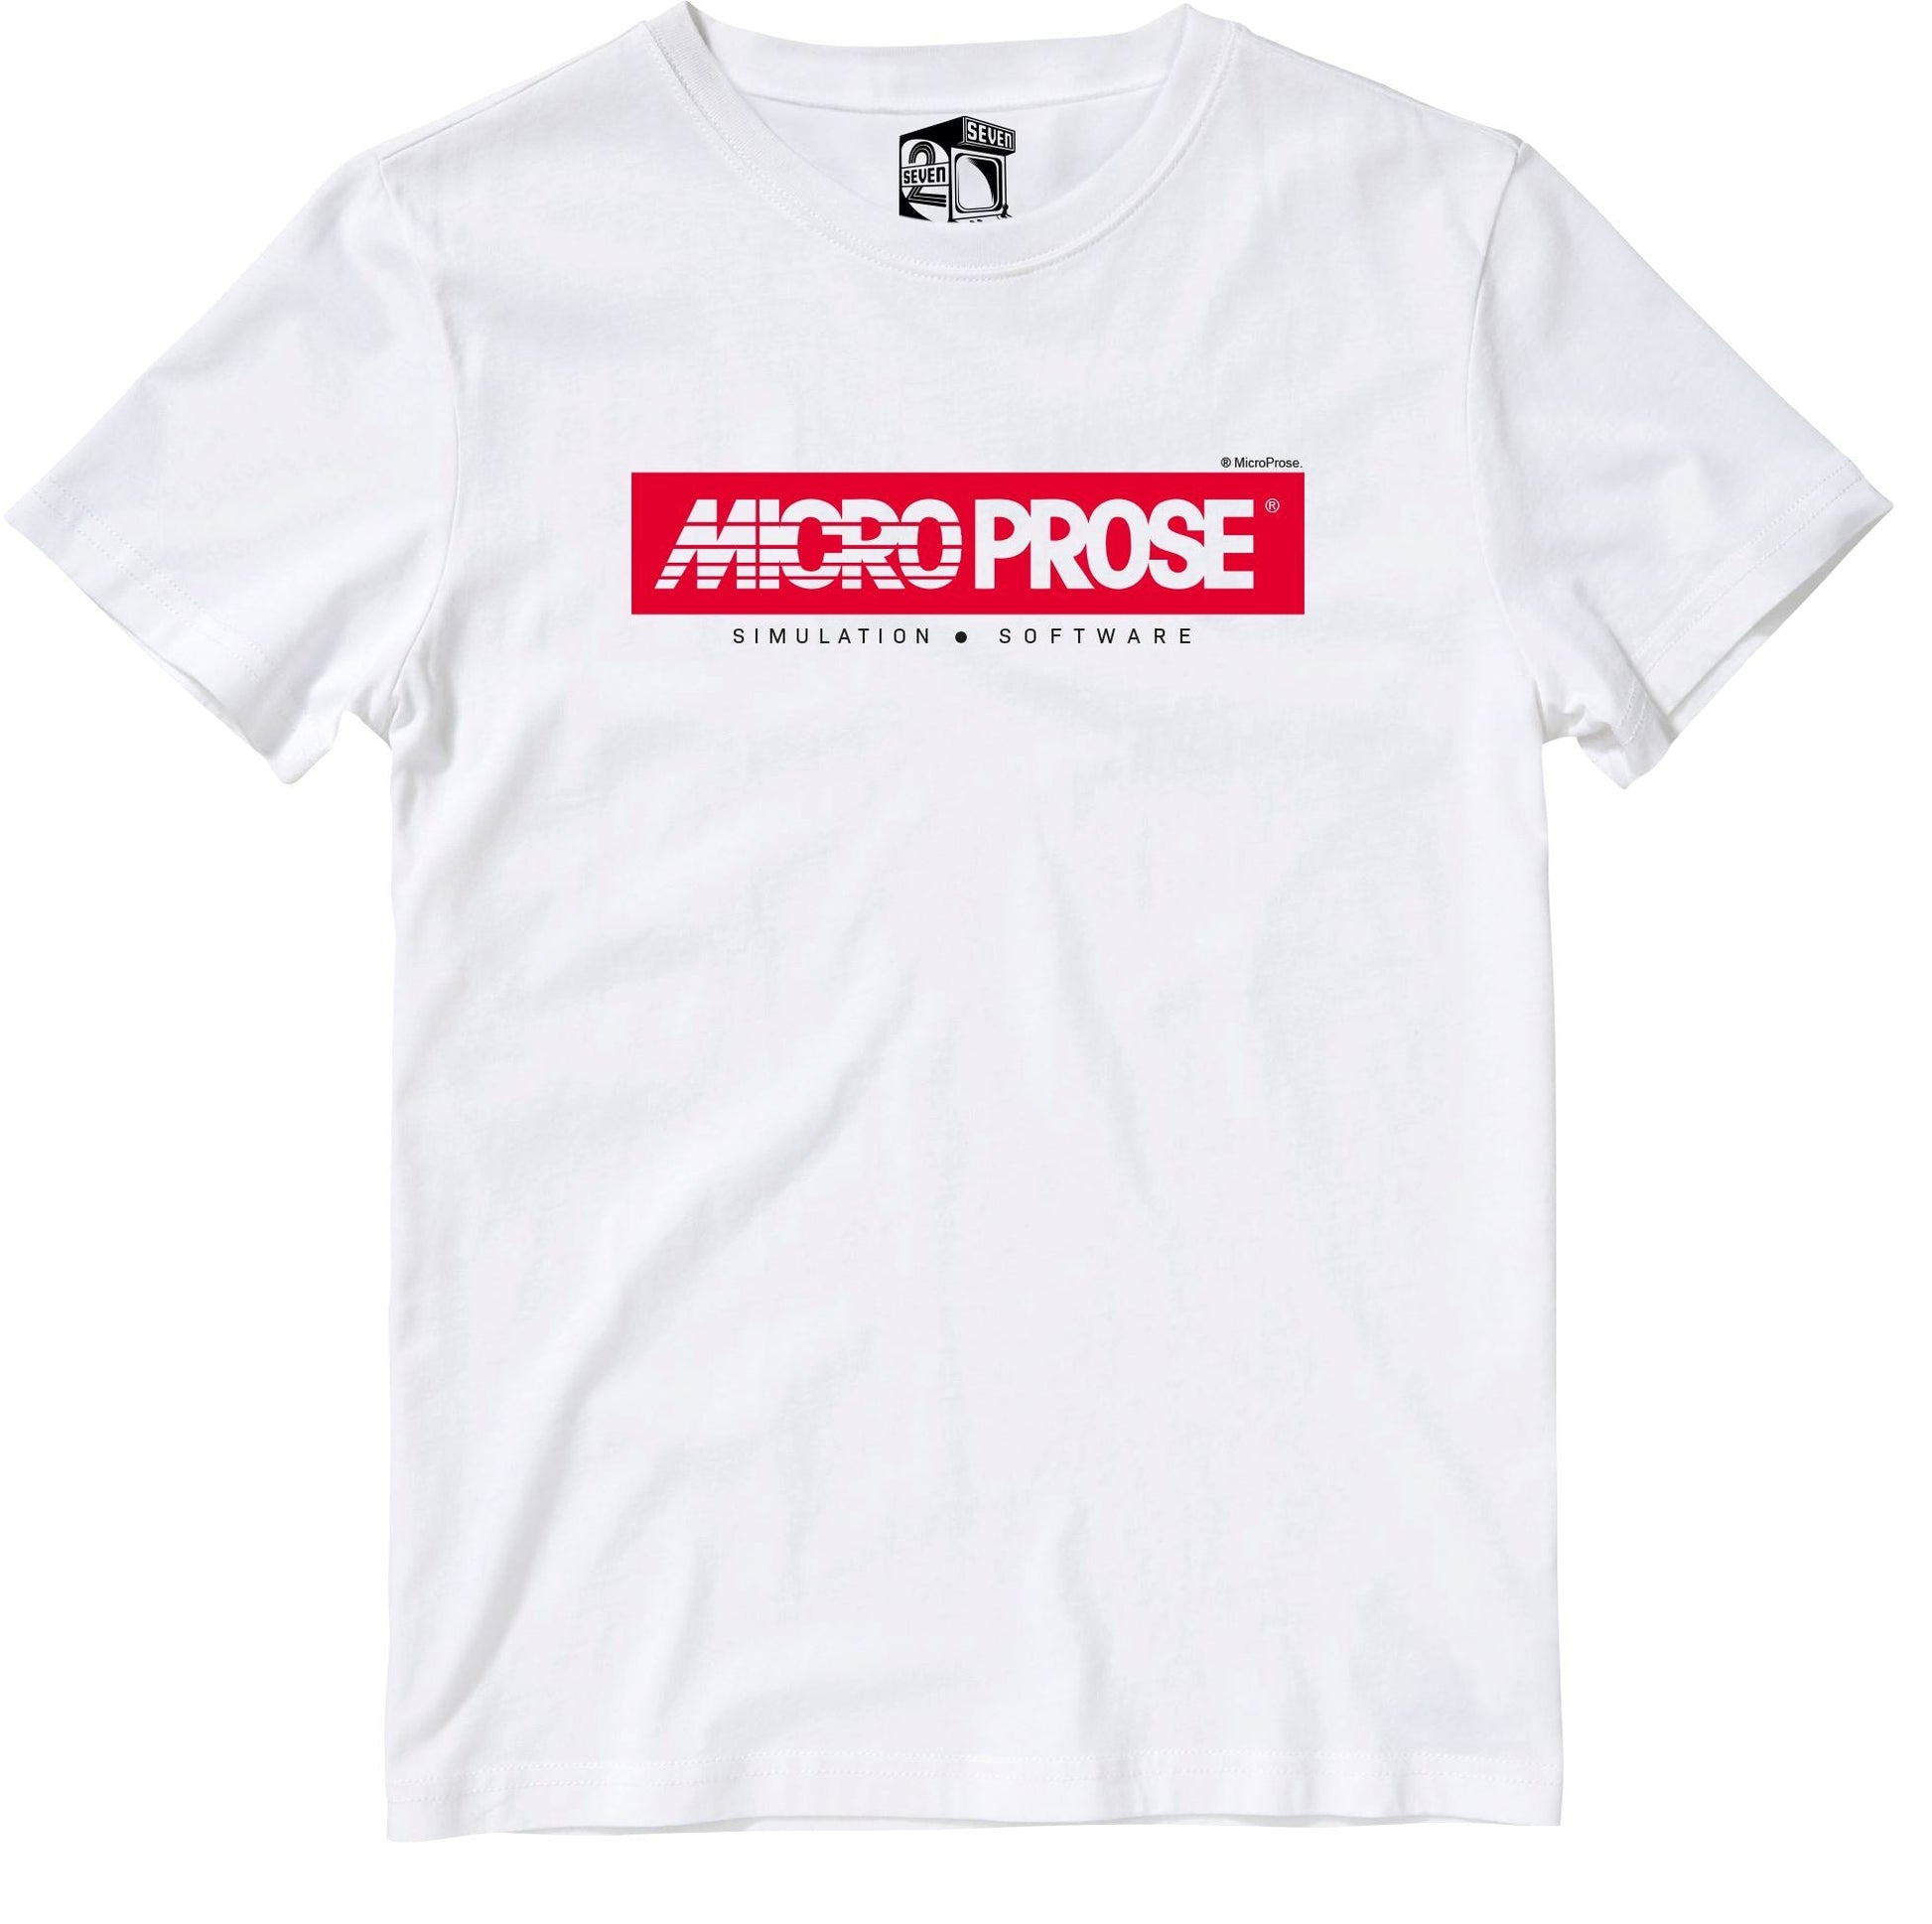 Microprose Logo Retro Gaming Kids T-Shirt Kids T-Shirt Seven Squared 3-4 Years White 